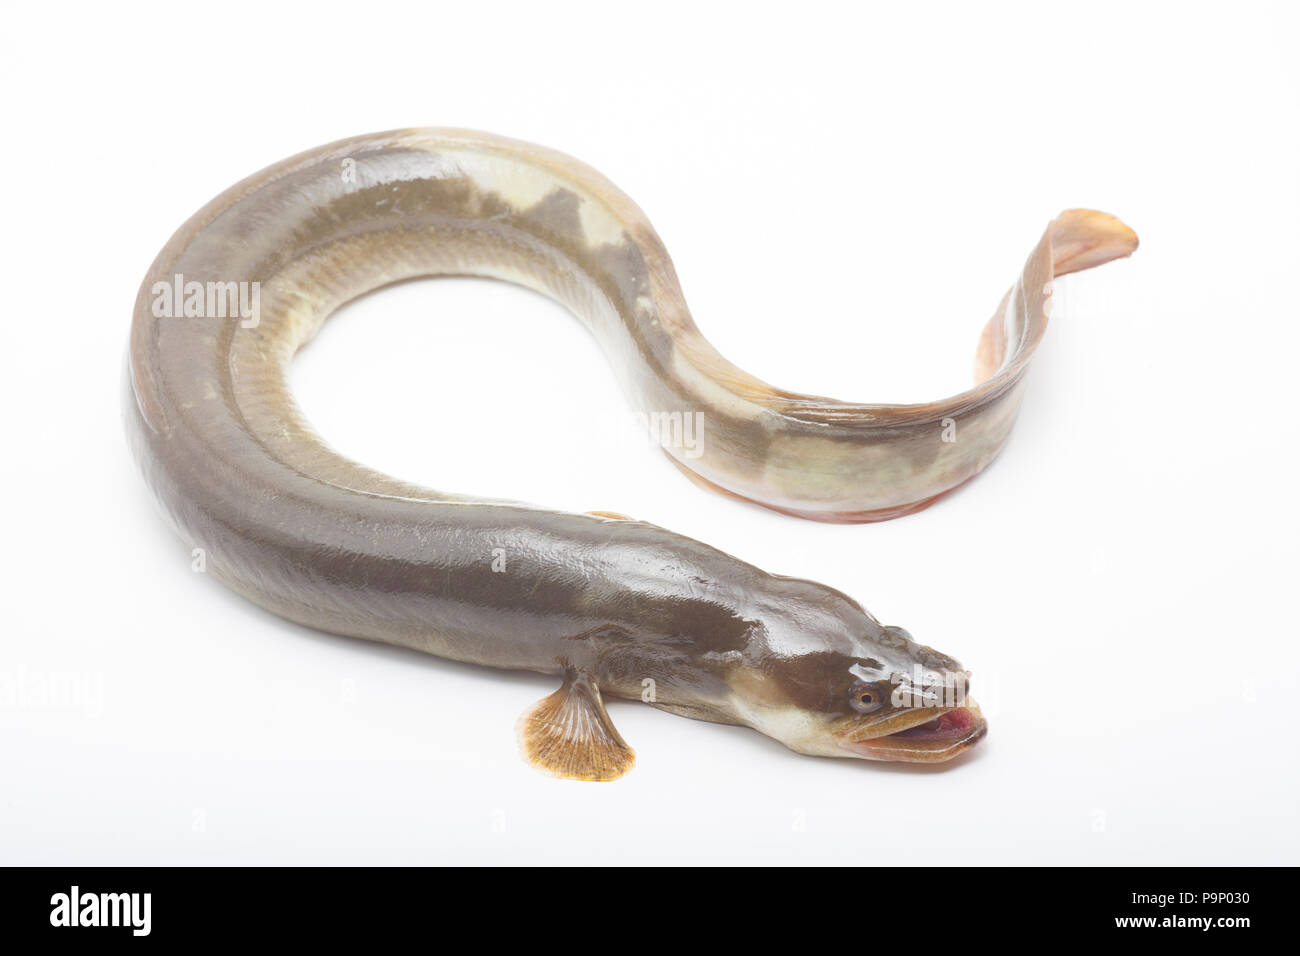 Une anguille d'eau douce, Anguilla anguilla, sur un fond blanc. Anguille d'eau douce des populations dans le Royaume-Uni ont chuté de façon spectaculaire. Dorset England UK GO Banque D'Images